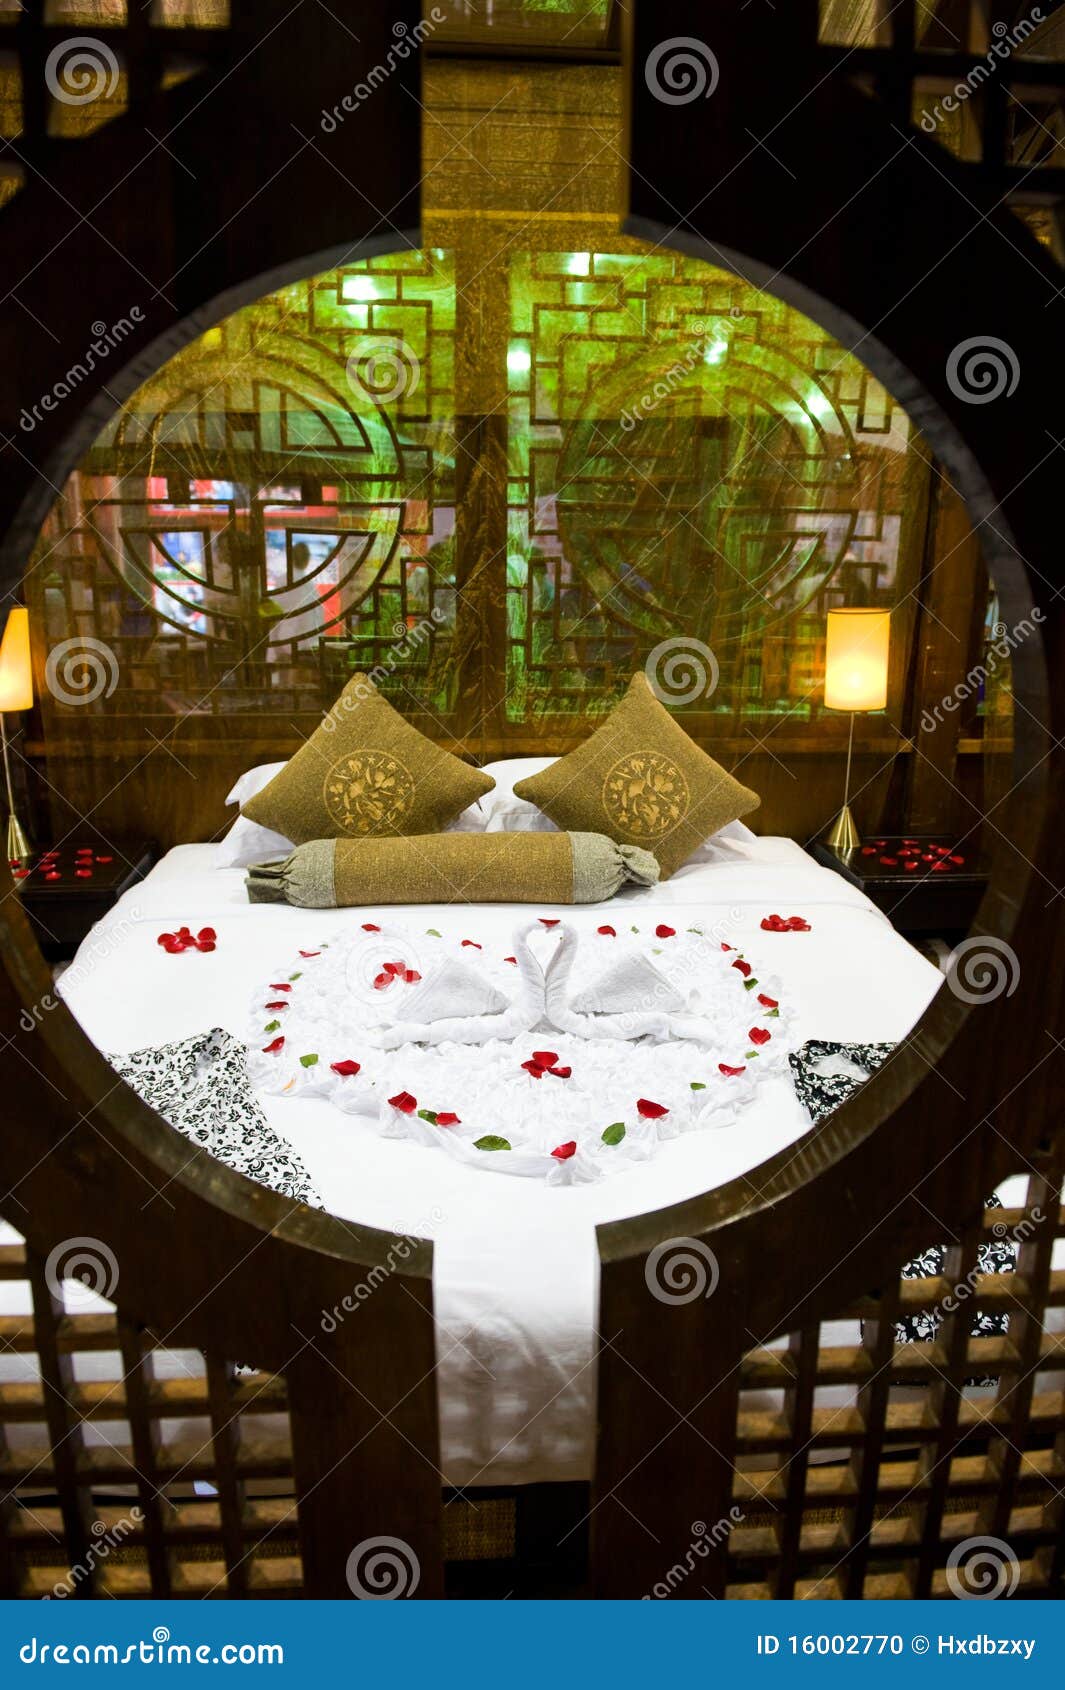 honeymoon bed